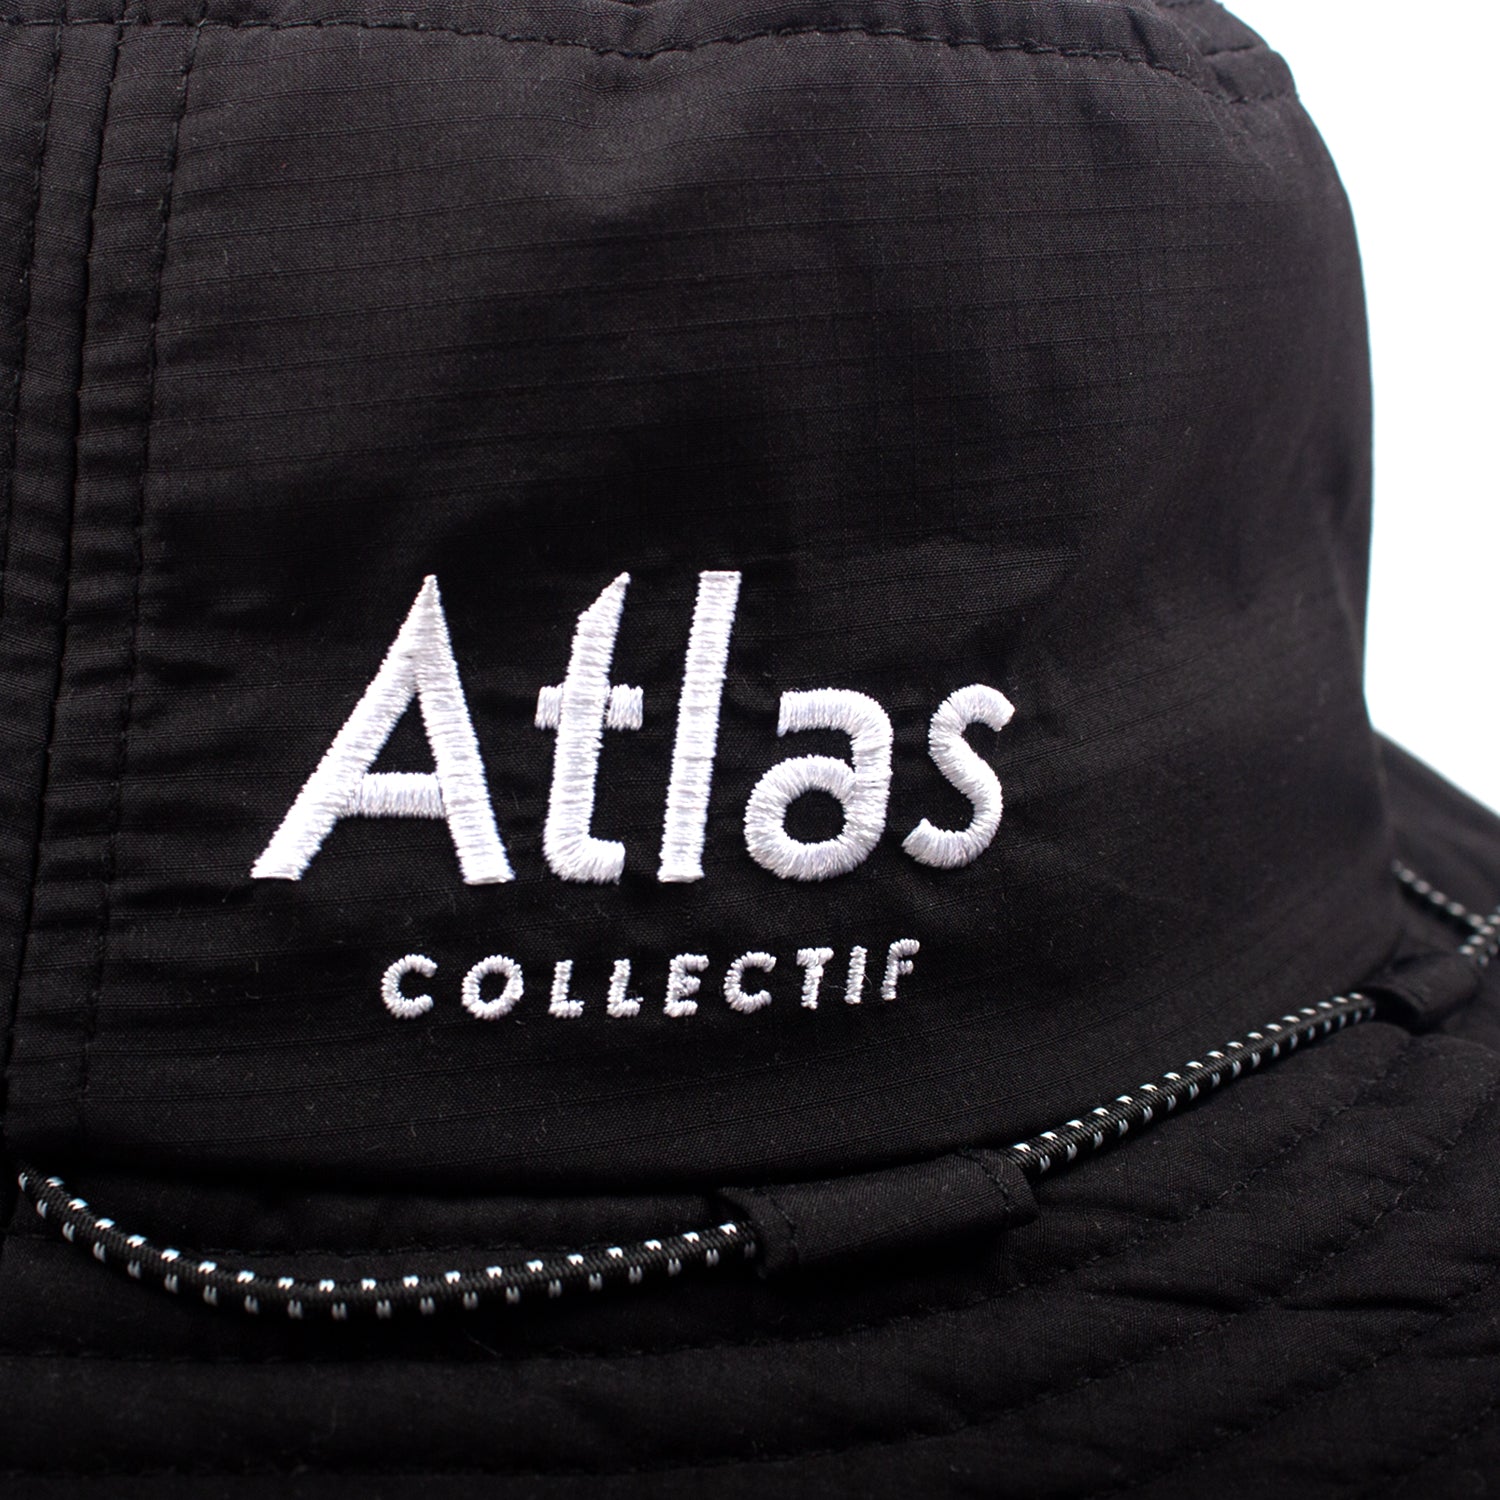 Life Boonie Hat - Atlas Collectif